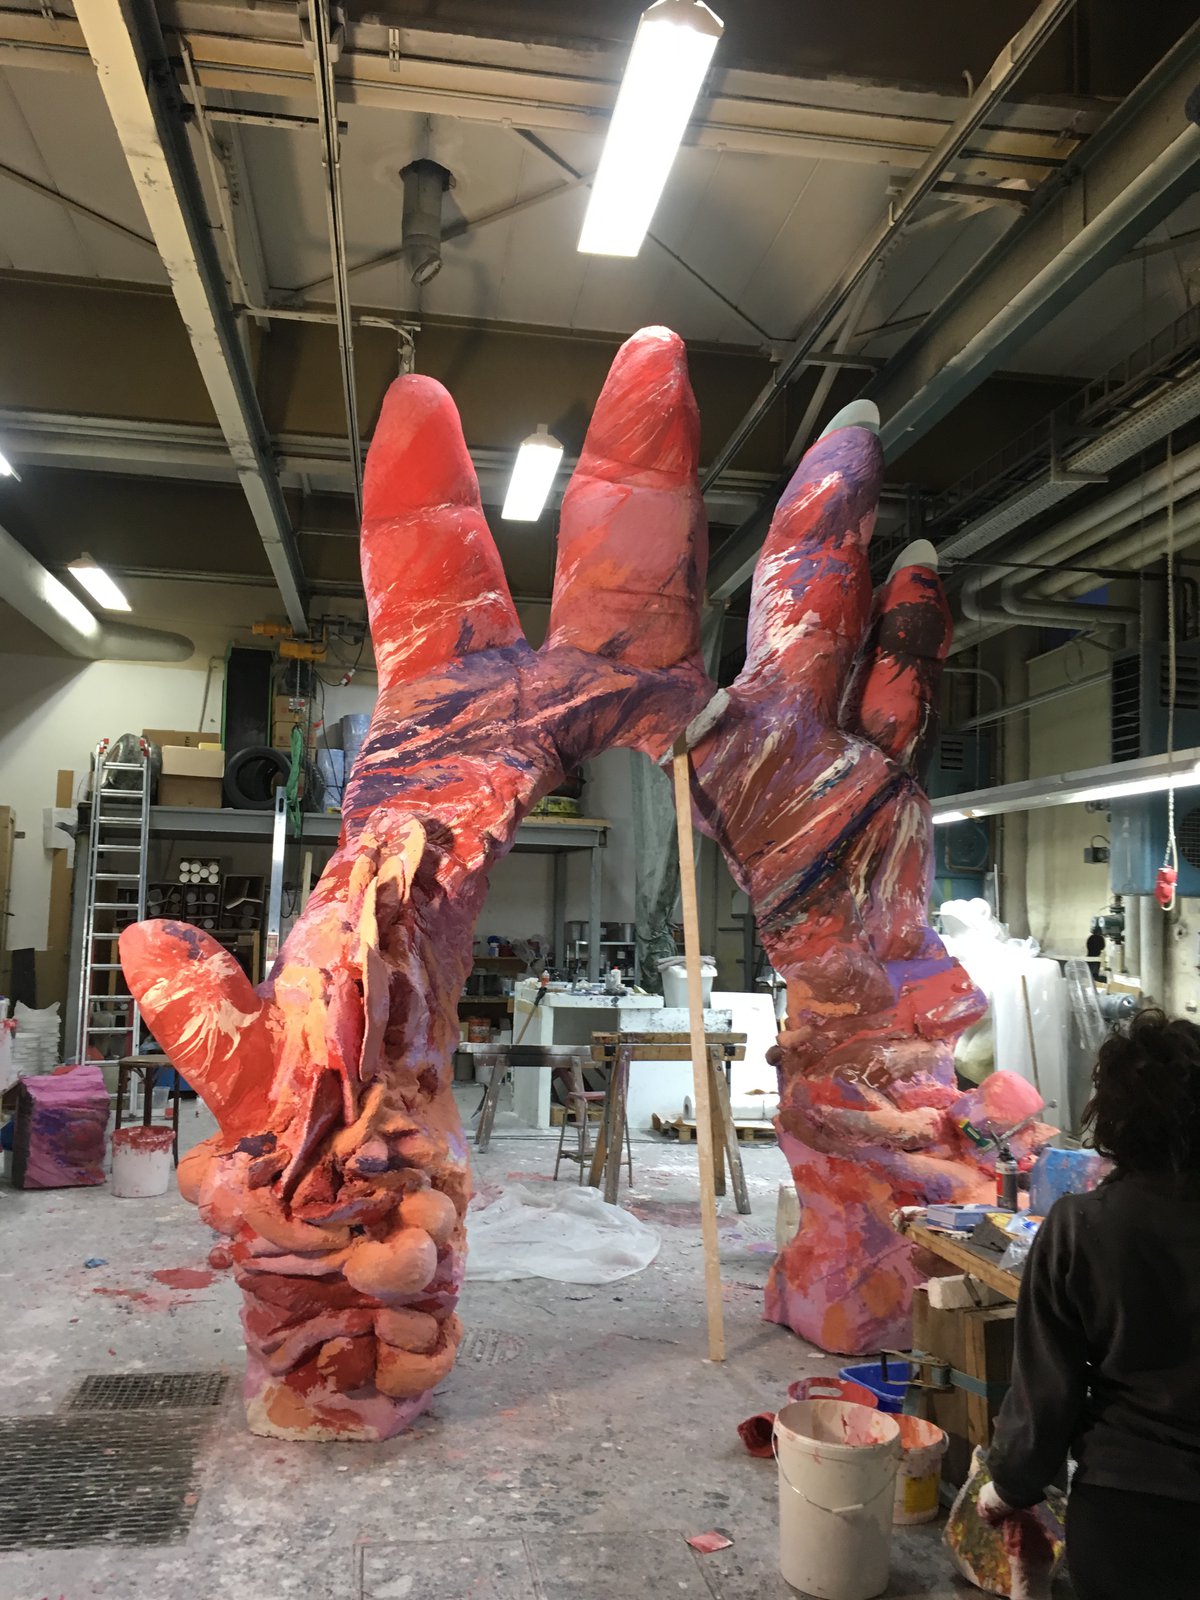 The Hand, Biennale Venedig